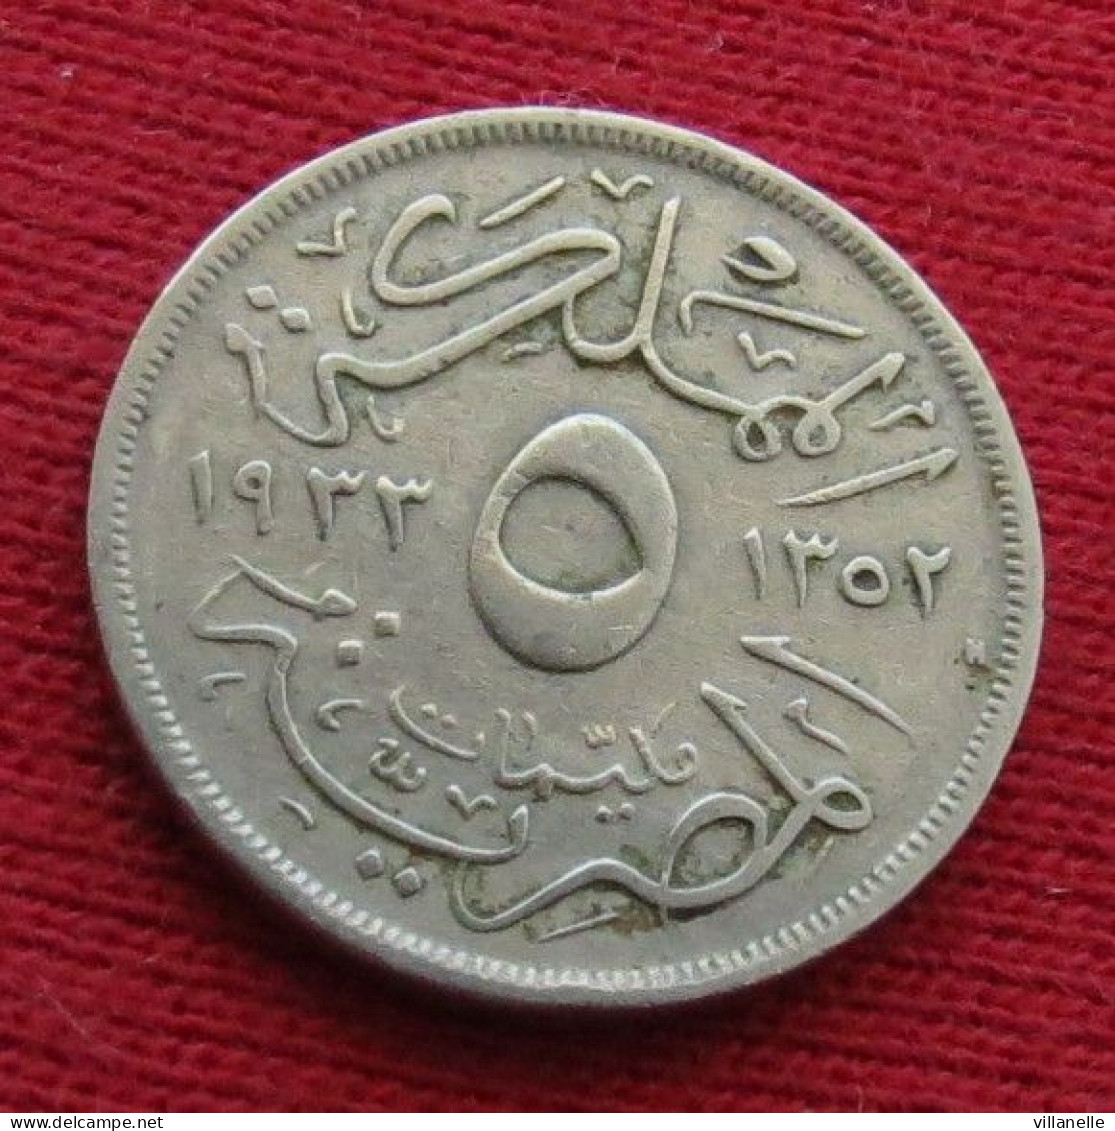 Egypt 5 Milliemes 1352 1933 KM# 346 Egipto Egypte Egito Egitto Ägypten L7-6 W ºº - Egypt